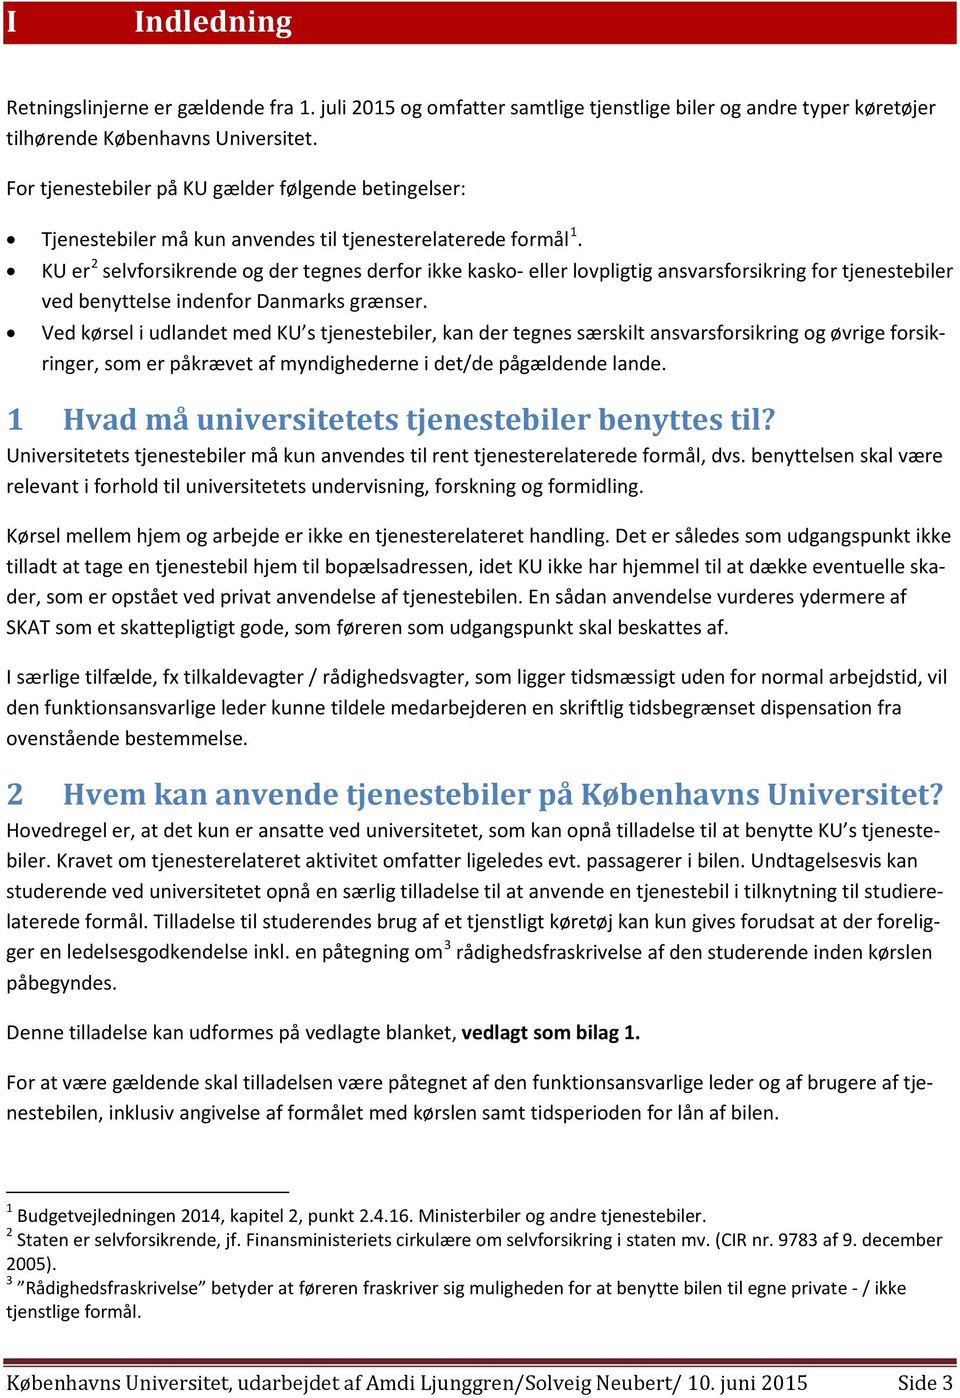 KU er 2 selvforsikrende og der tegnes derfor ikke kasko- eller lovpligtig ansvarsforsikring for tjenestebiler ved benyttelse indenfor Danmarks grænser.